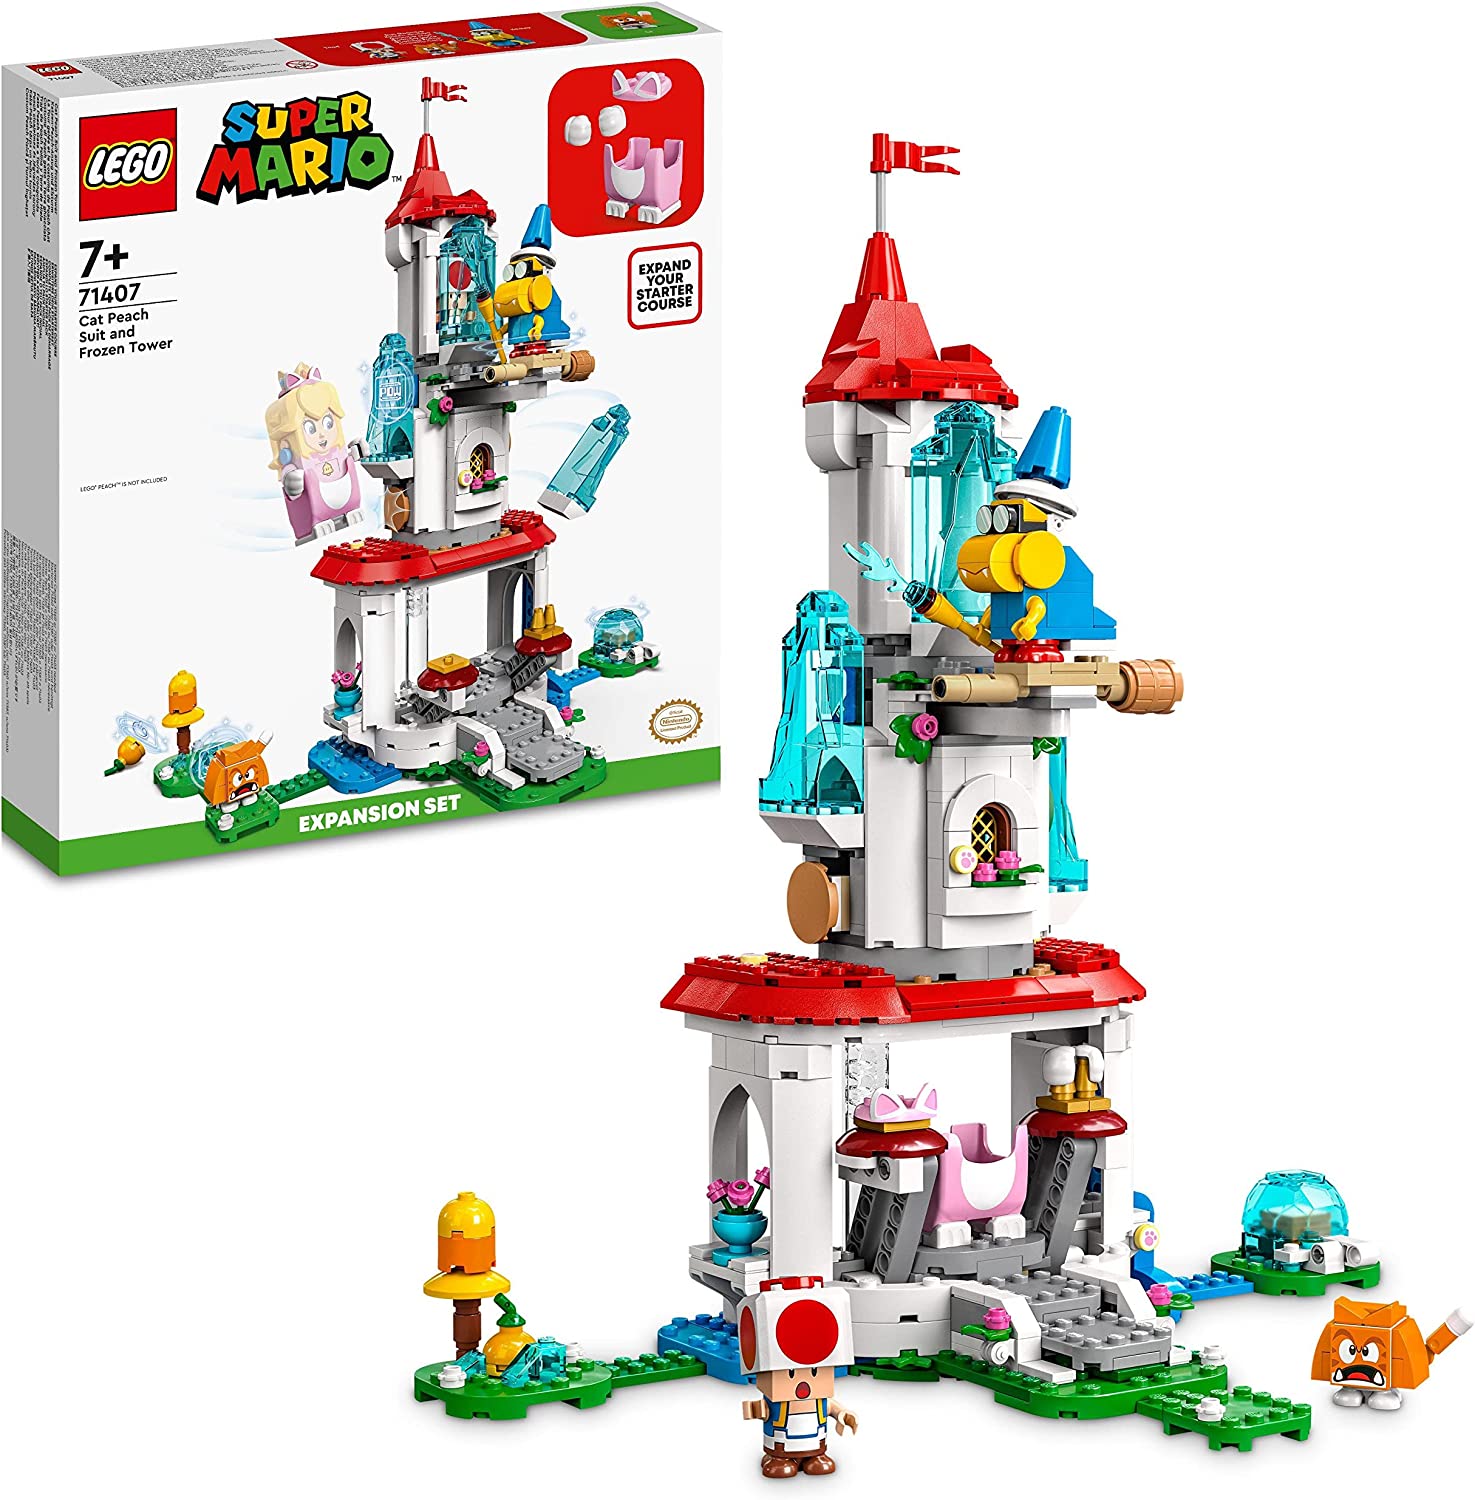 Lego Super Mario Cat Pfirsich und Frozen Tower Set 